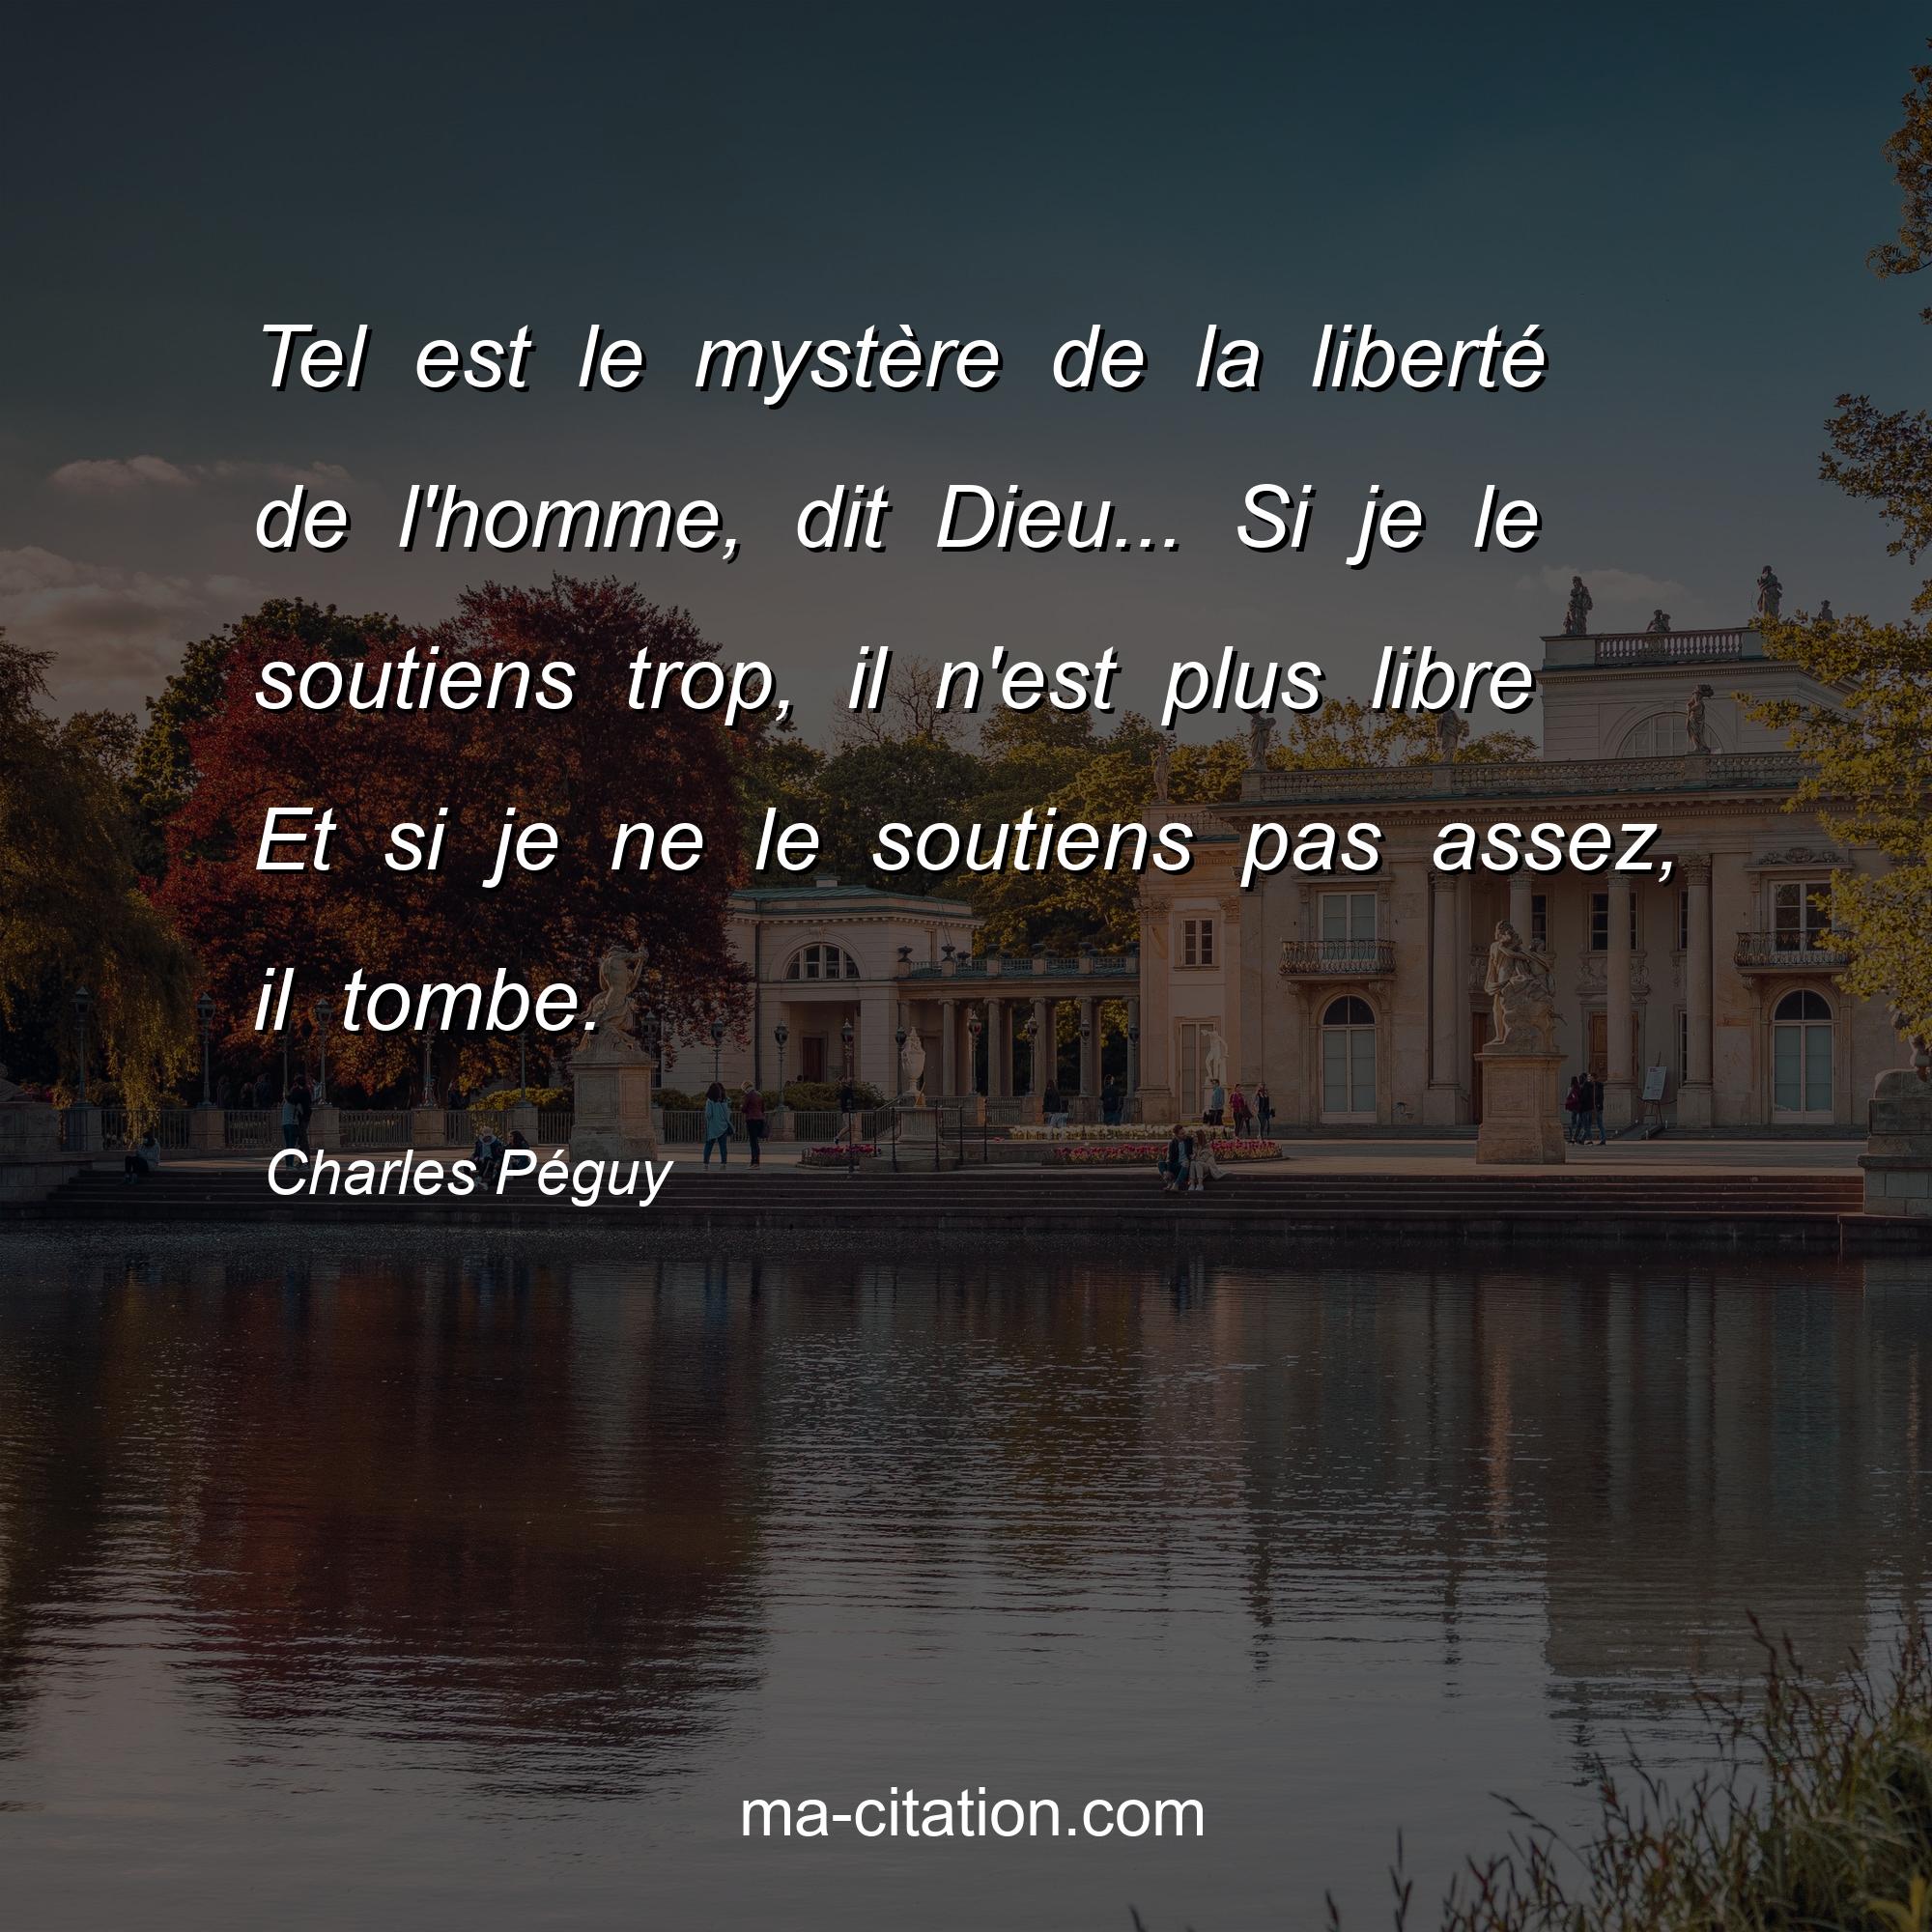 Charles Péguy : Tel est le mystère de la liberté de l'homme, dit Dieu... Si je le soutiens trop, il n'est plus libre Et si je ne le soutiens pas assez, il tombe.